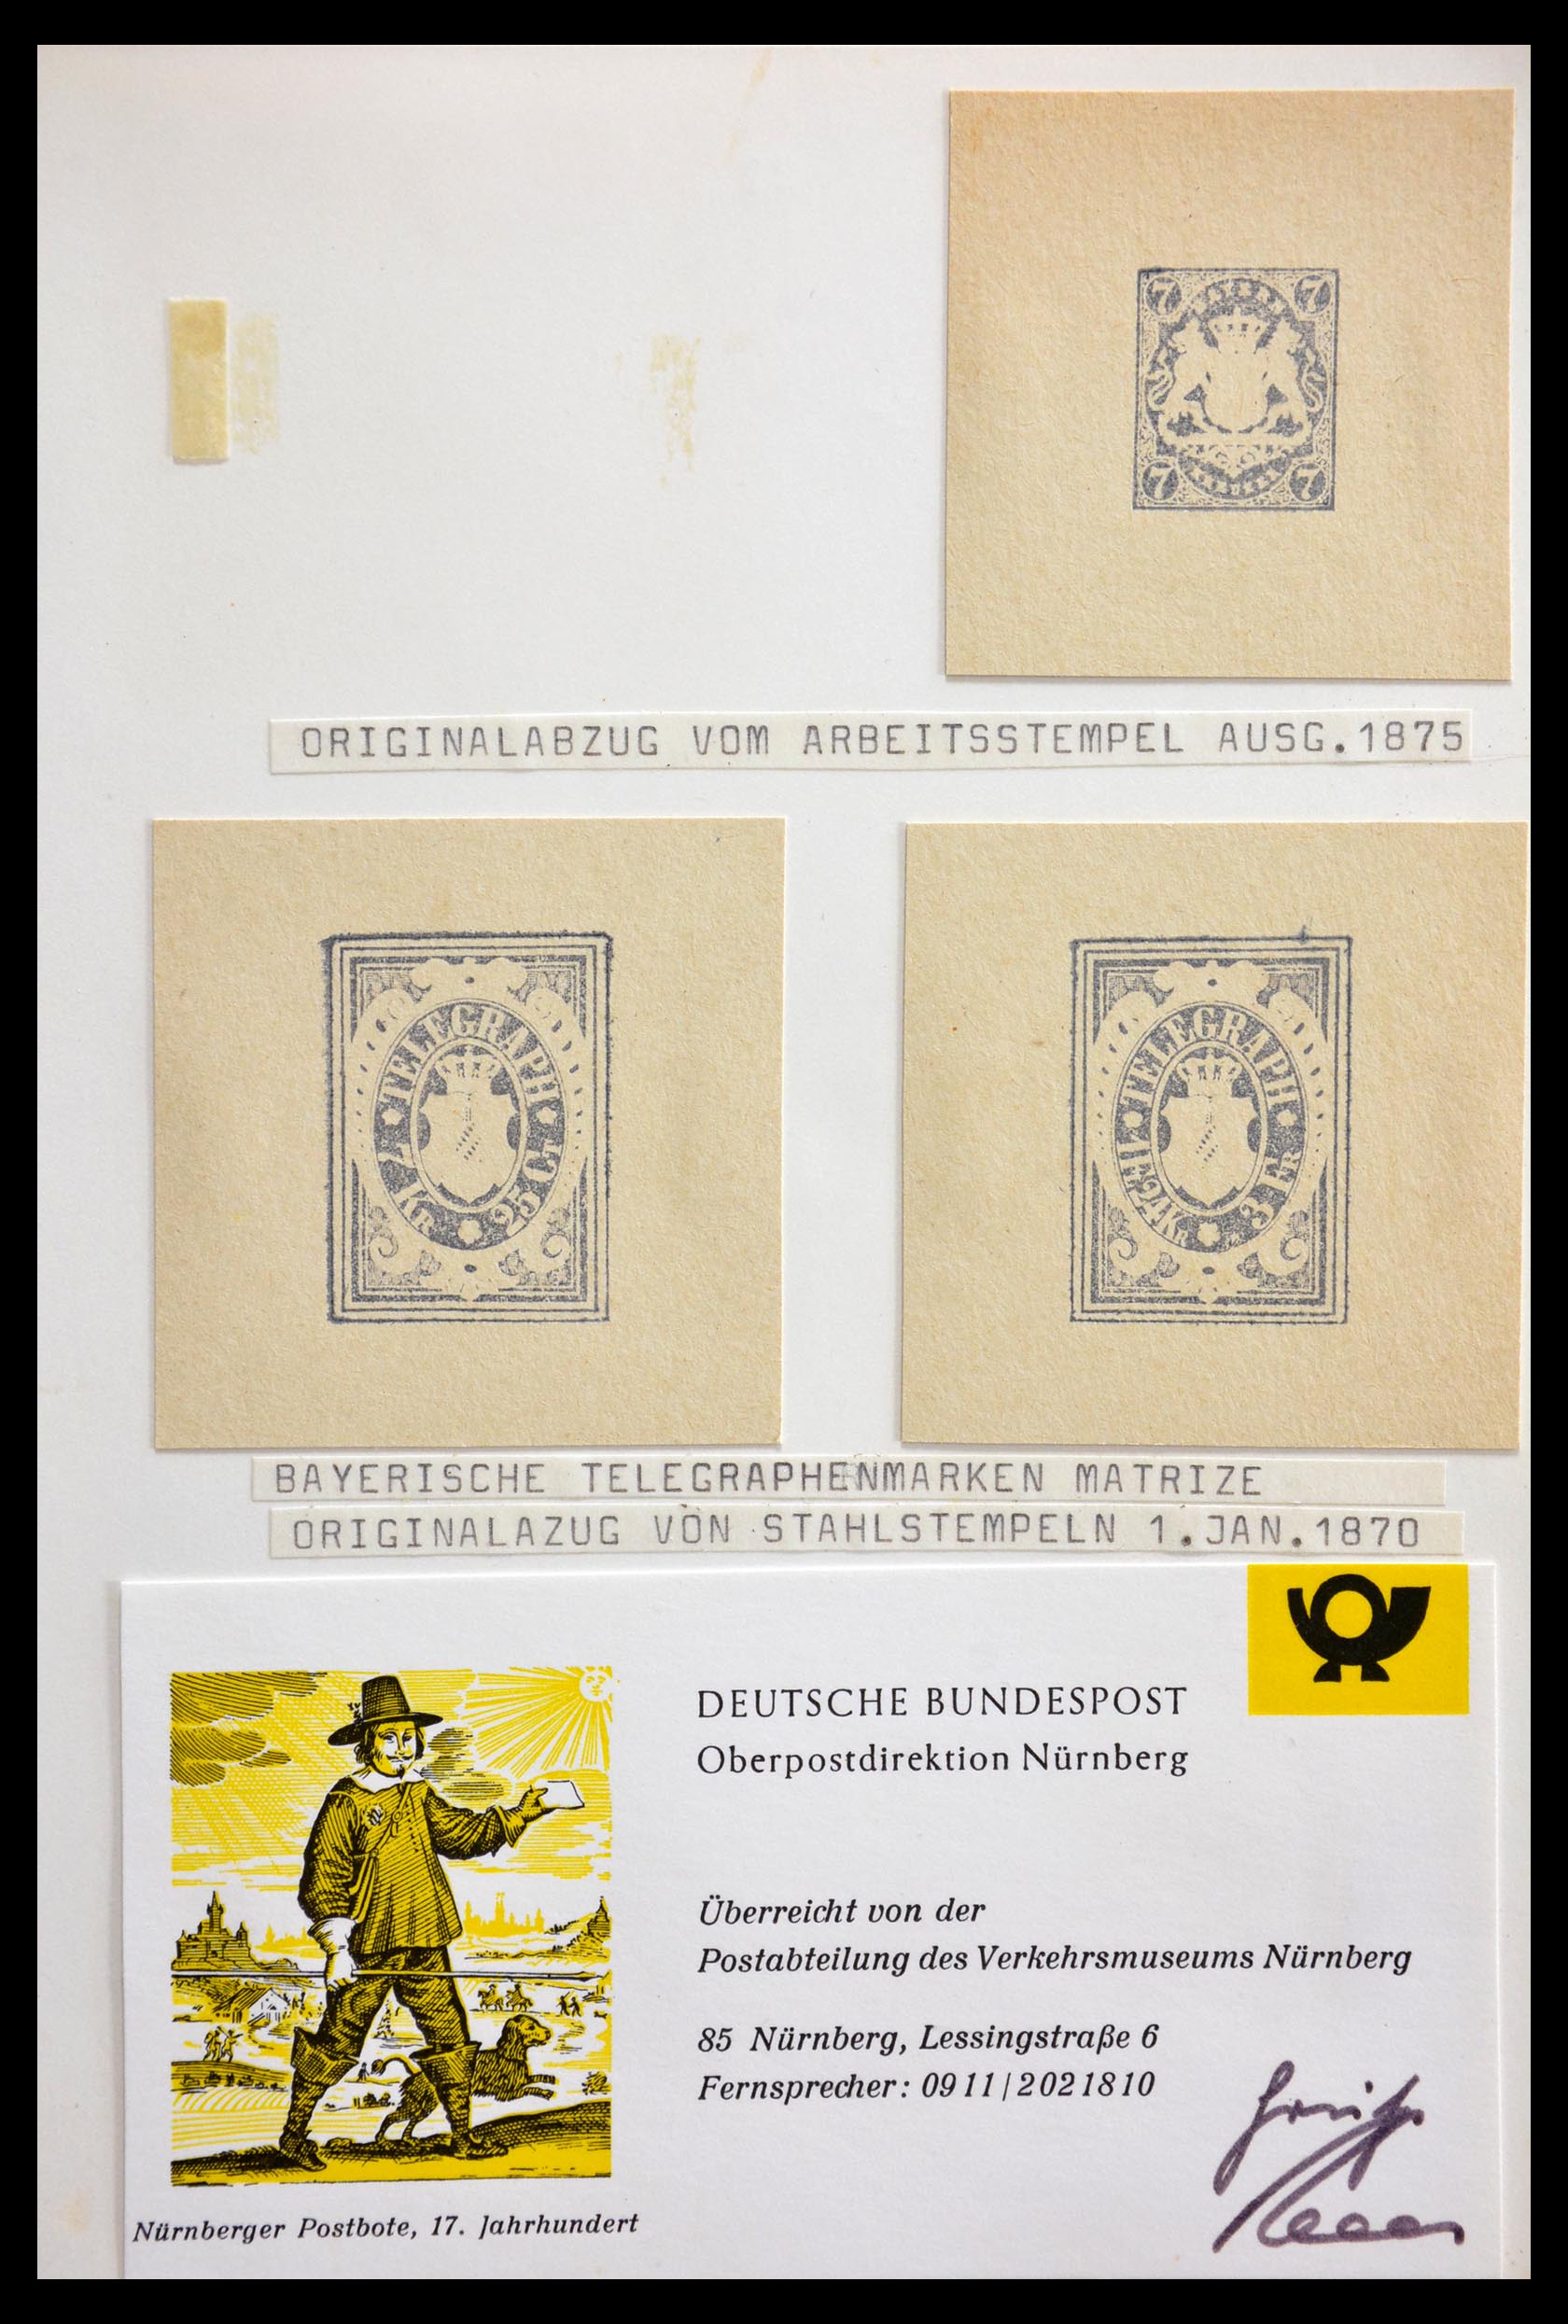 29129 008 - 29129 Duitsland proeven en essays 1849-1960.